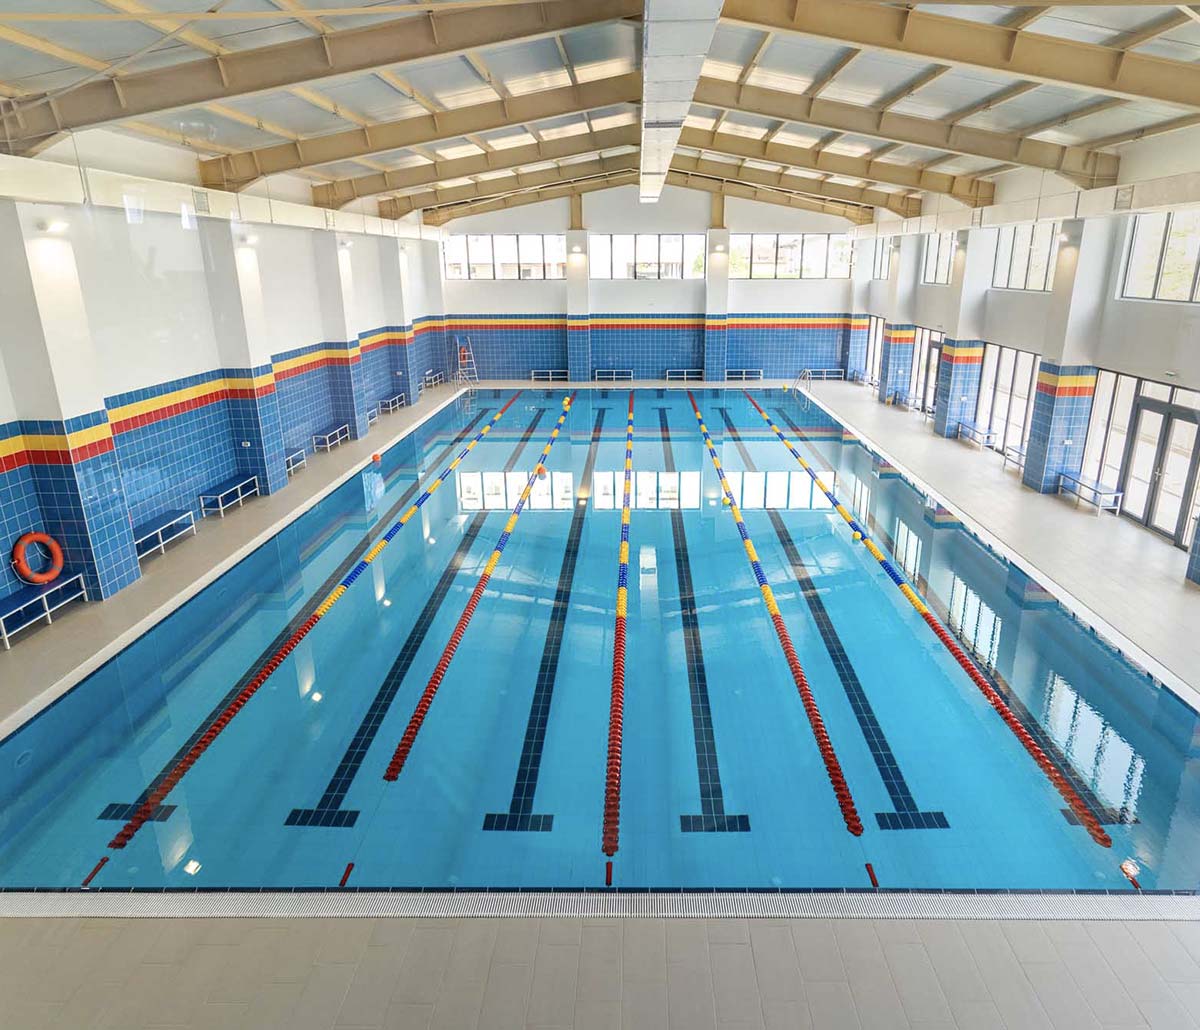 Atenție părinți și cei care doresc sa învețe să înoate, prețuri reduse la cursurile de înot la cel mai modern bazin din Capitală, Bazin Titan!